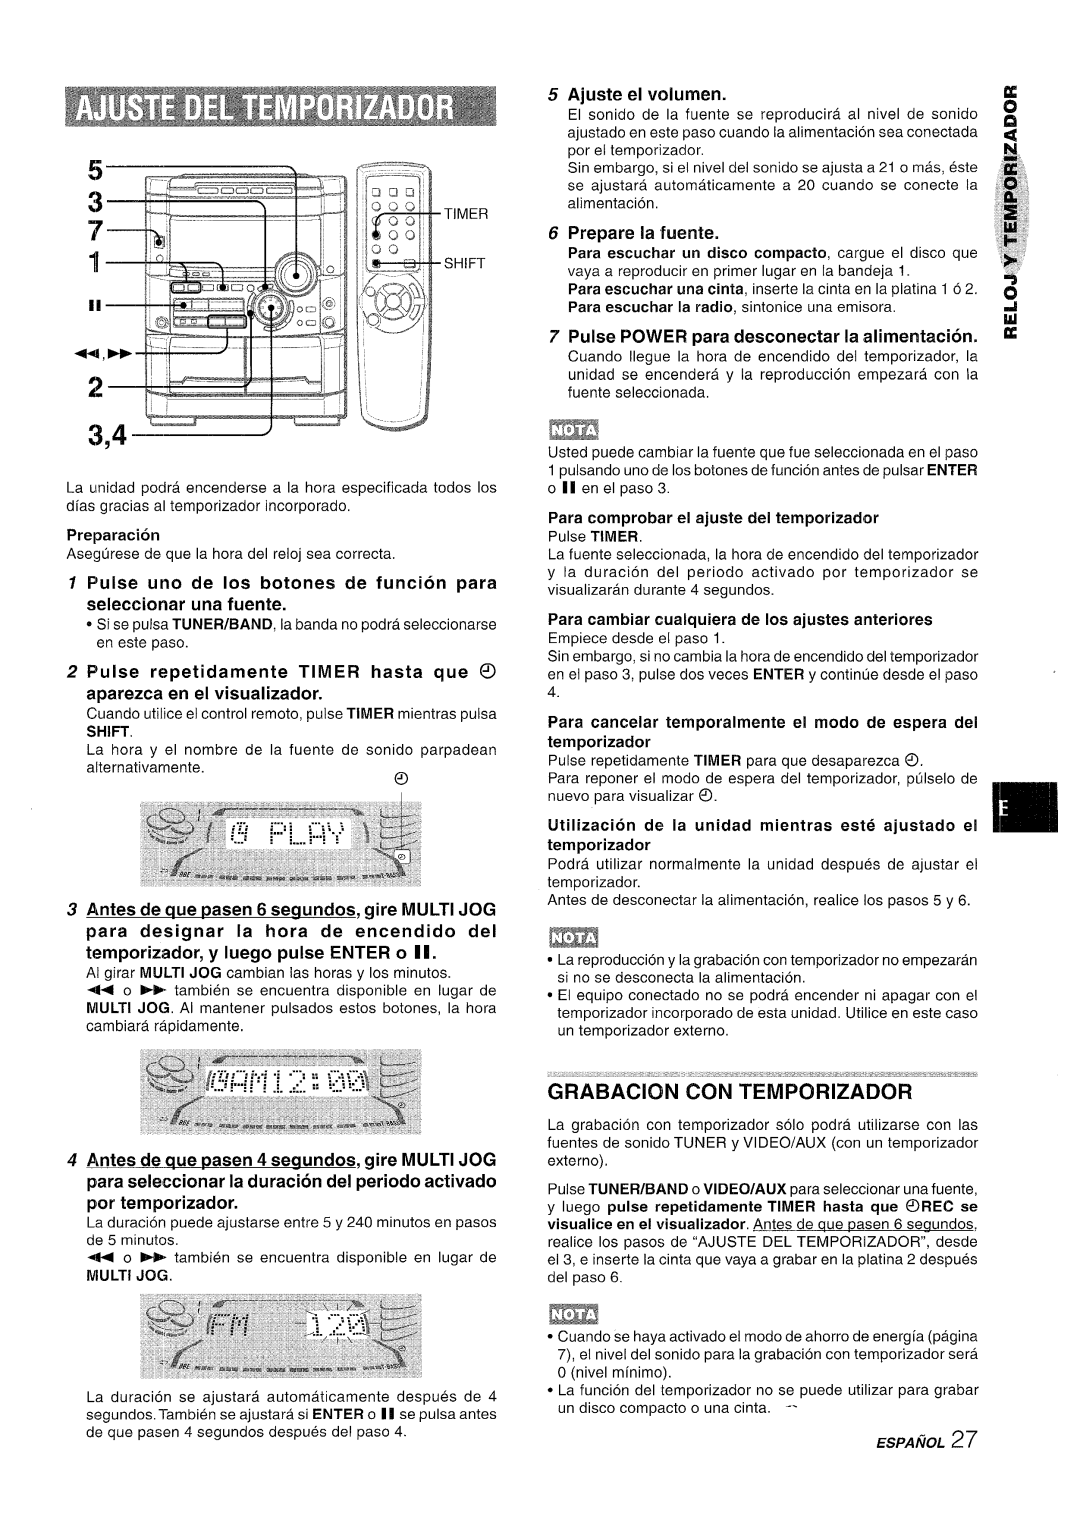 Sony NSX-A767 manual GRABAClbN tiON’TEiiiPORIZADOR, Prepare la fuente, aparezca en el visualizador, Ajuste, el volumen 